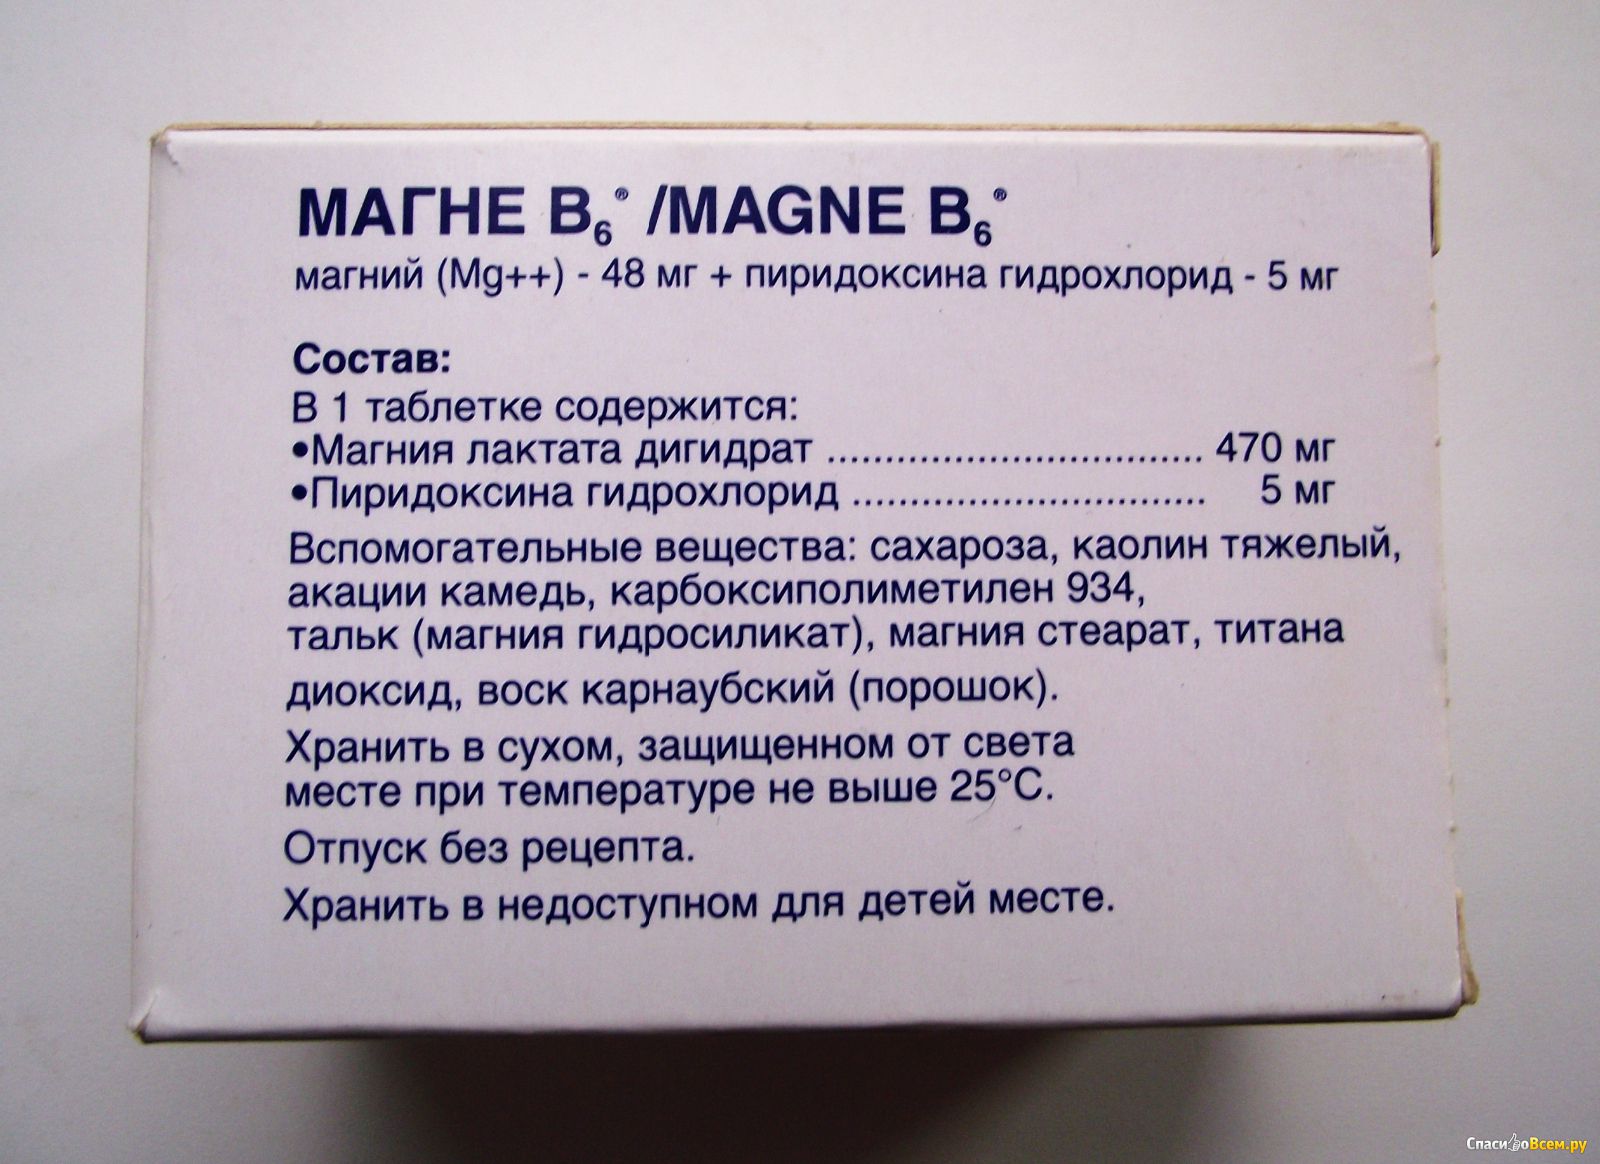 Магний б6 можно детям. Магний в6 состав. Суточная дозировка магния в6. Магний б6 пиридоксина гидрохлорид.